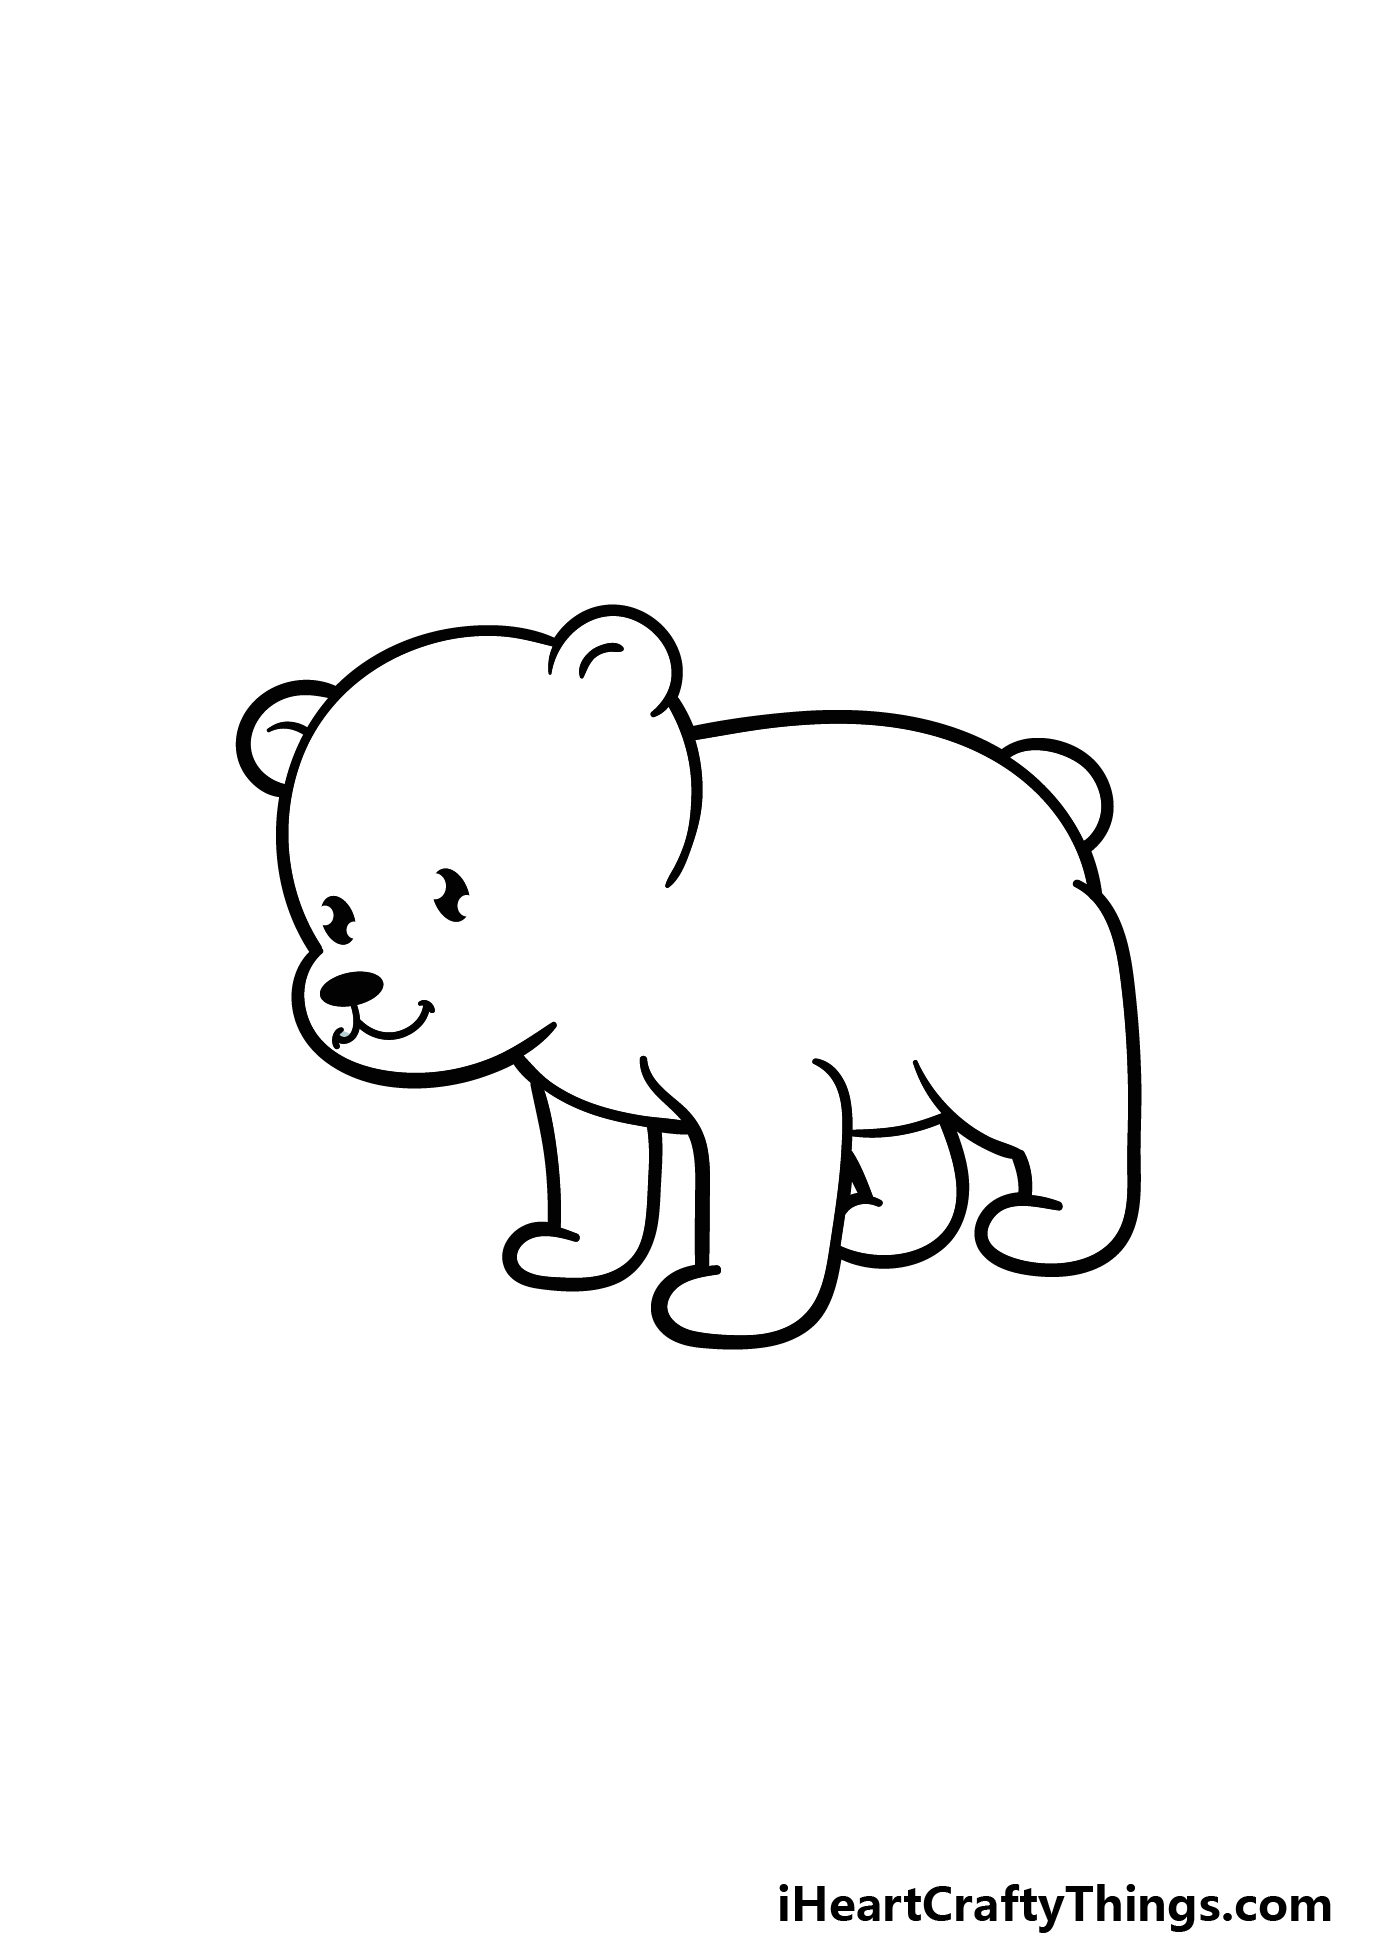 Cartoon Polar Bear Drawing - How To Draw A Cartoon Polar Bear Step By Step